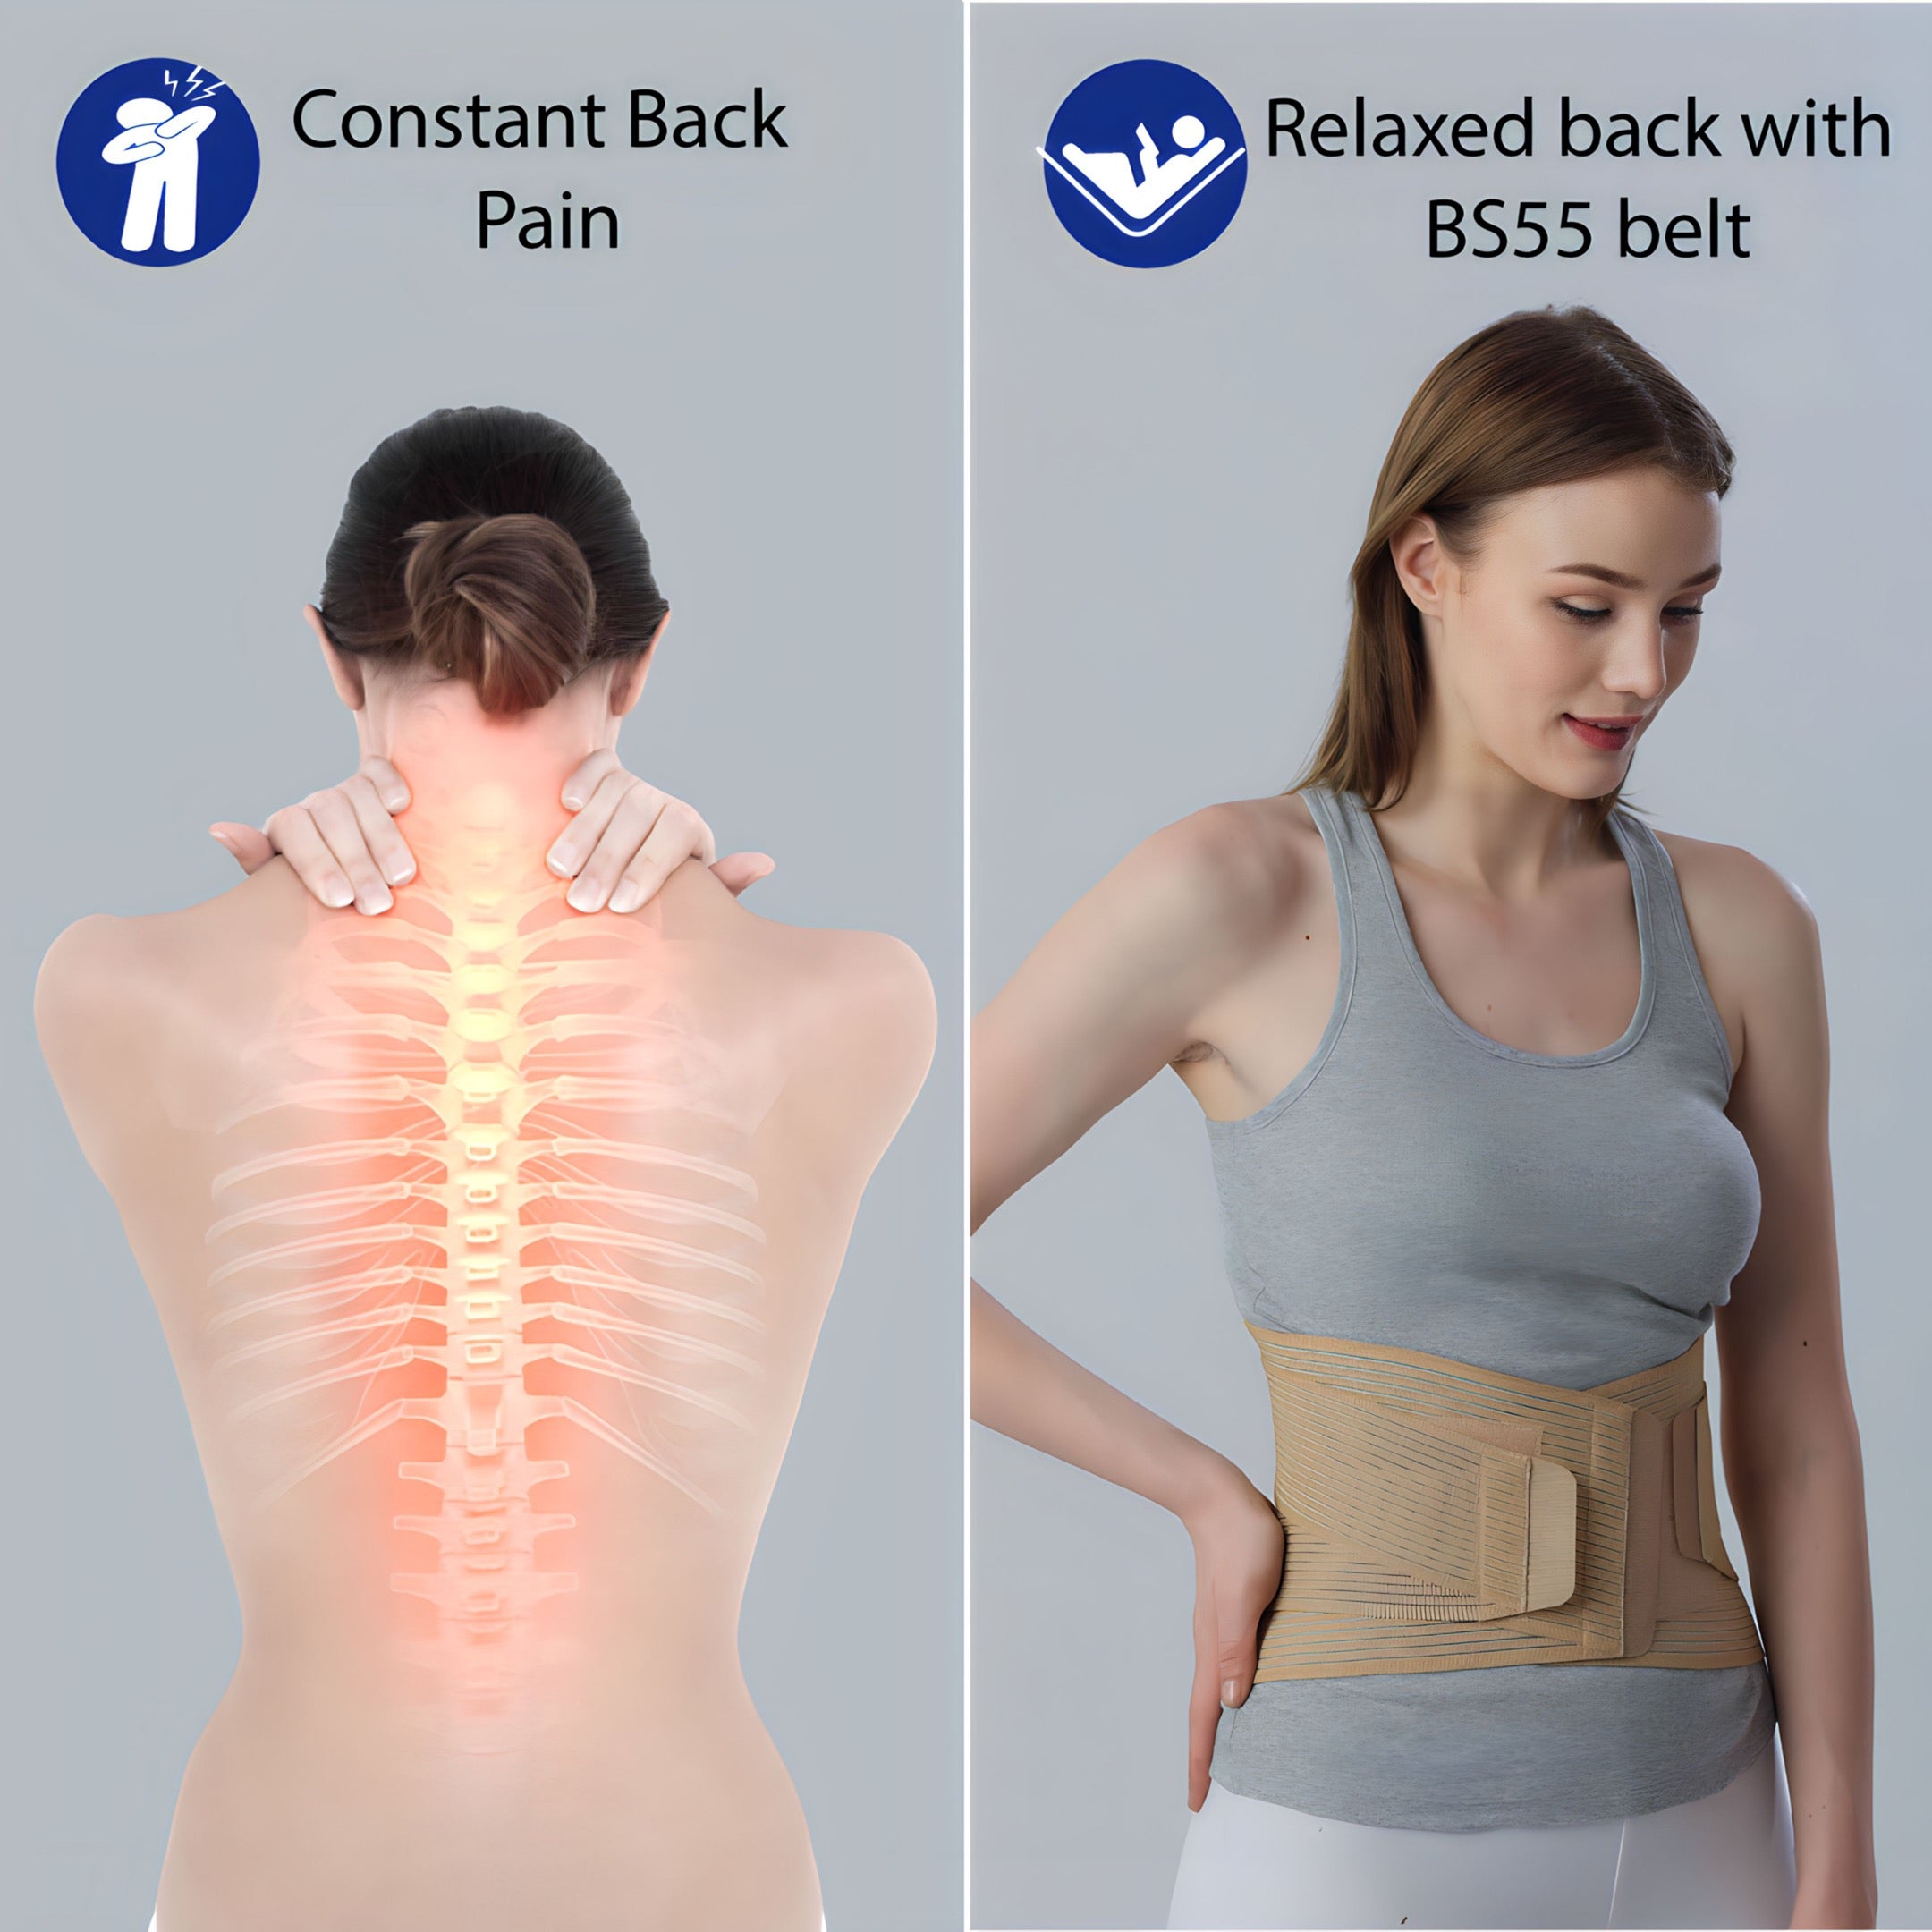 Lumbar corset belt relieves back pain - Back Support Belt